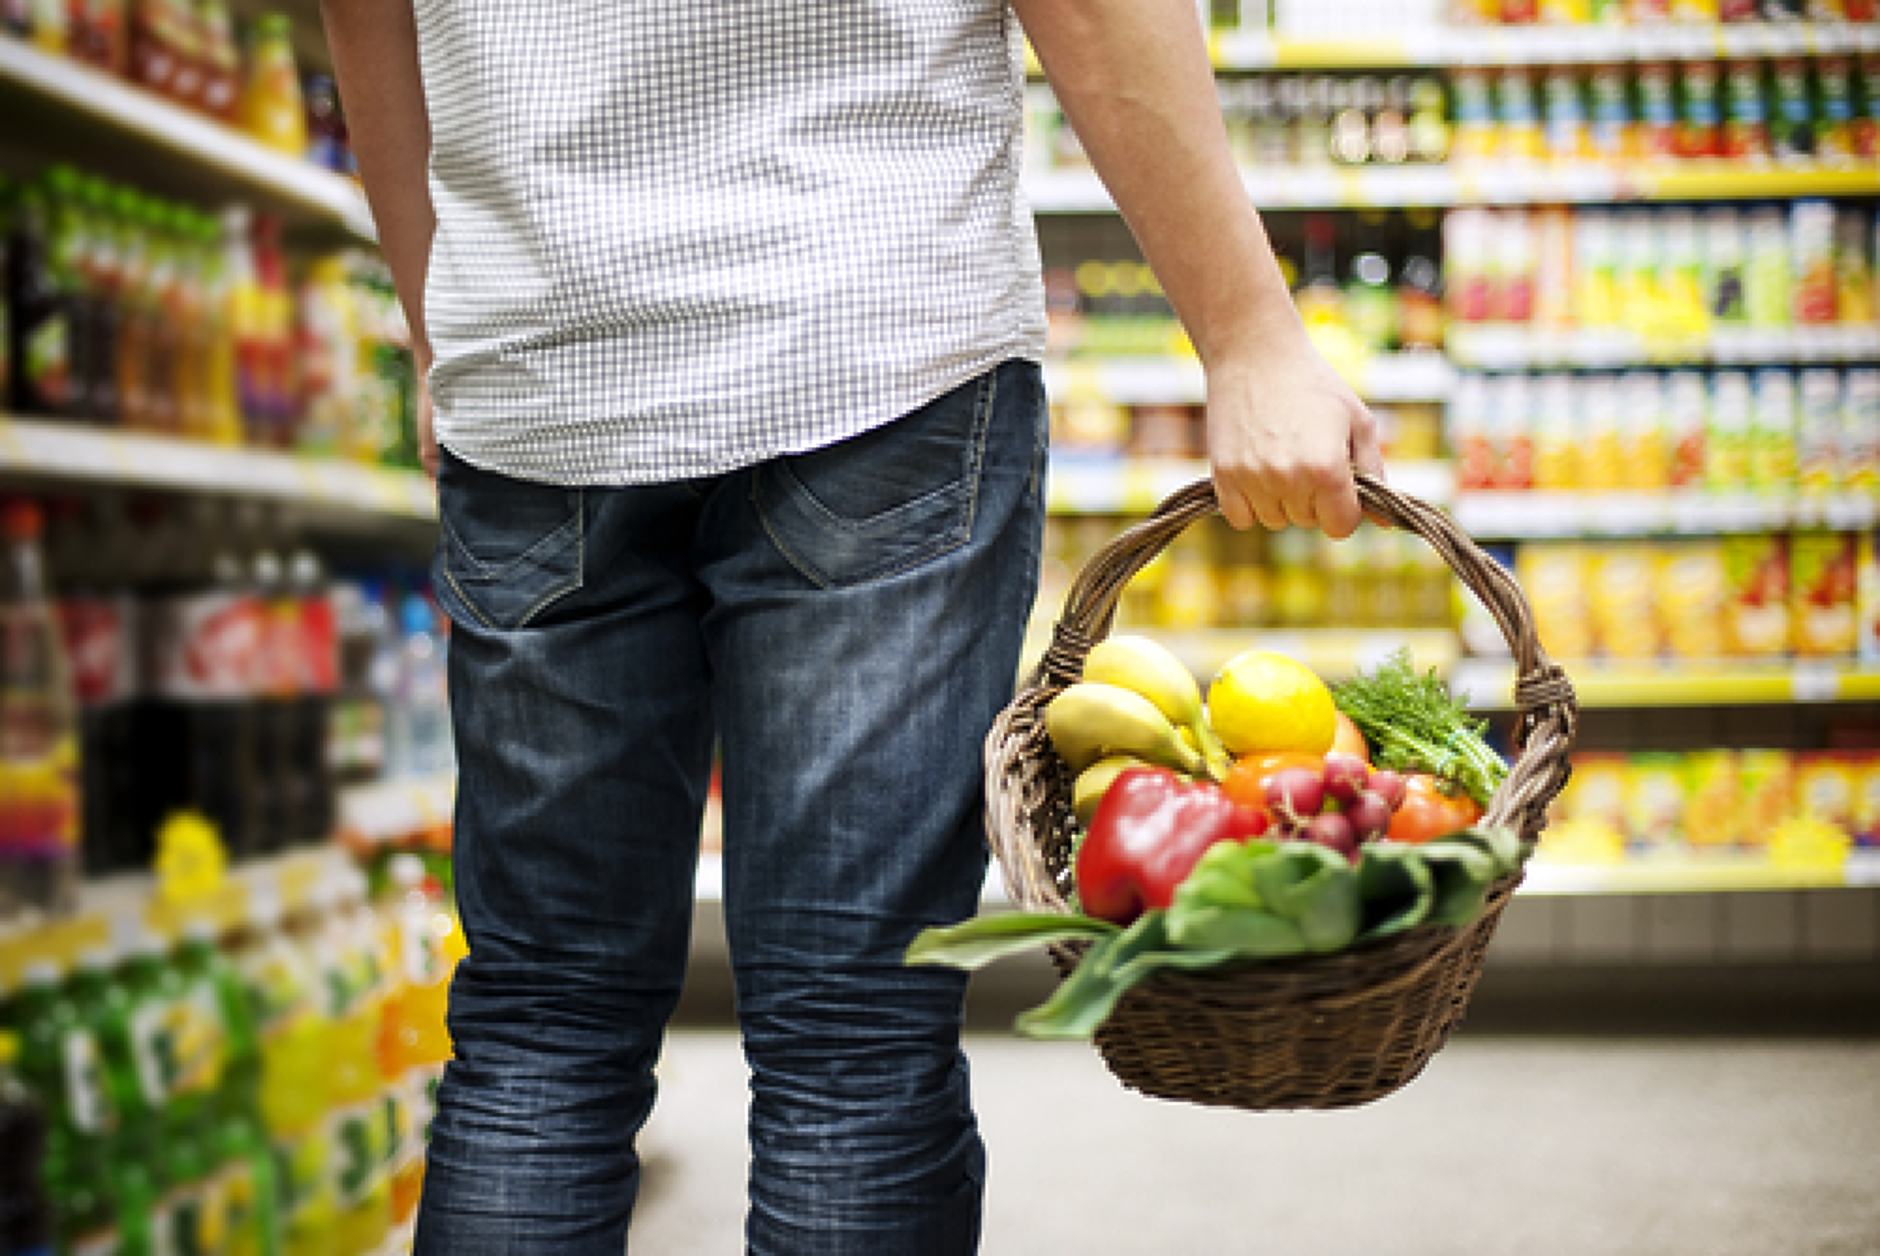 Ръст на цените на основни хранителни стоки и на повечето плодове и зеленчуци